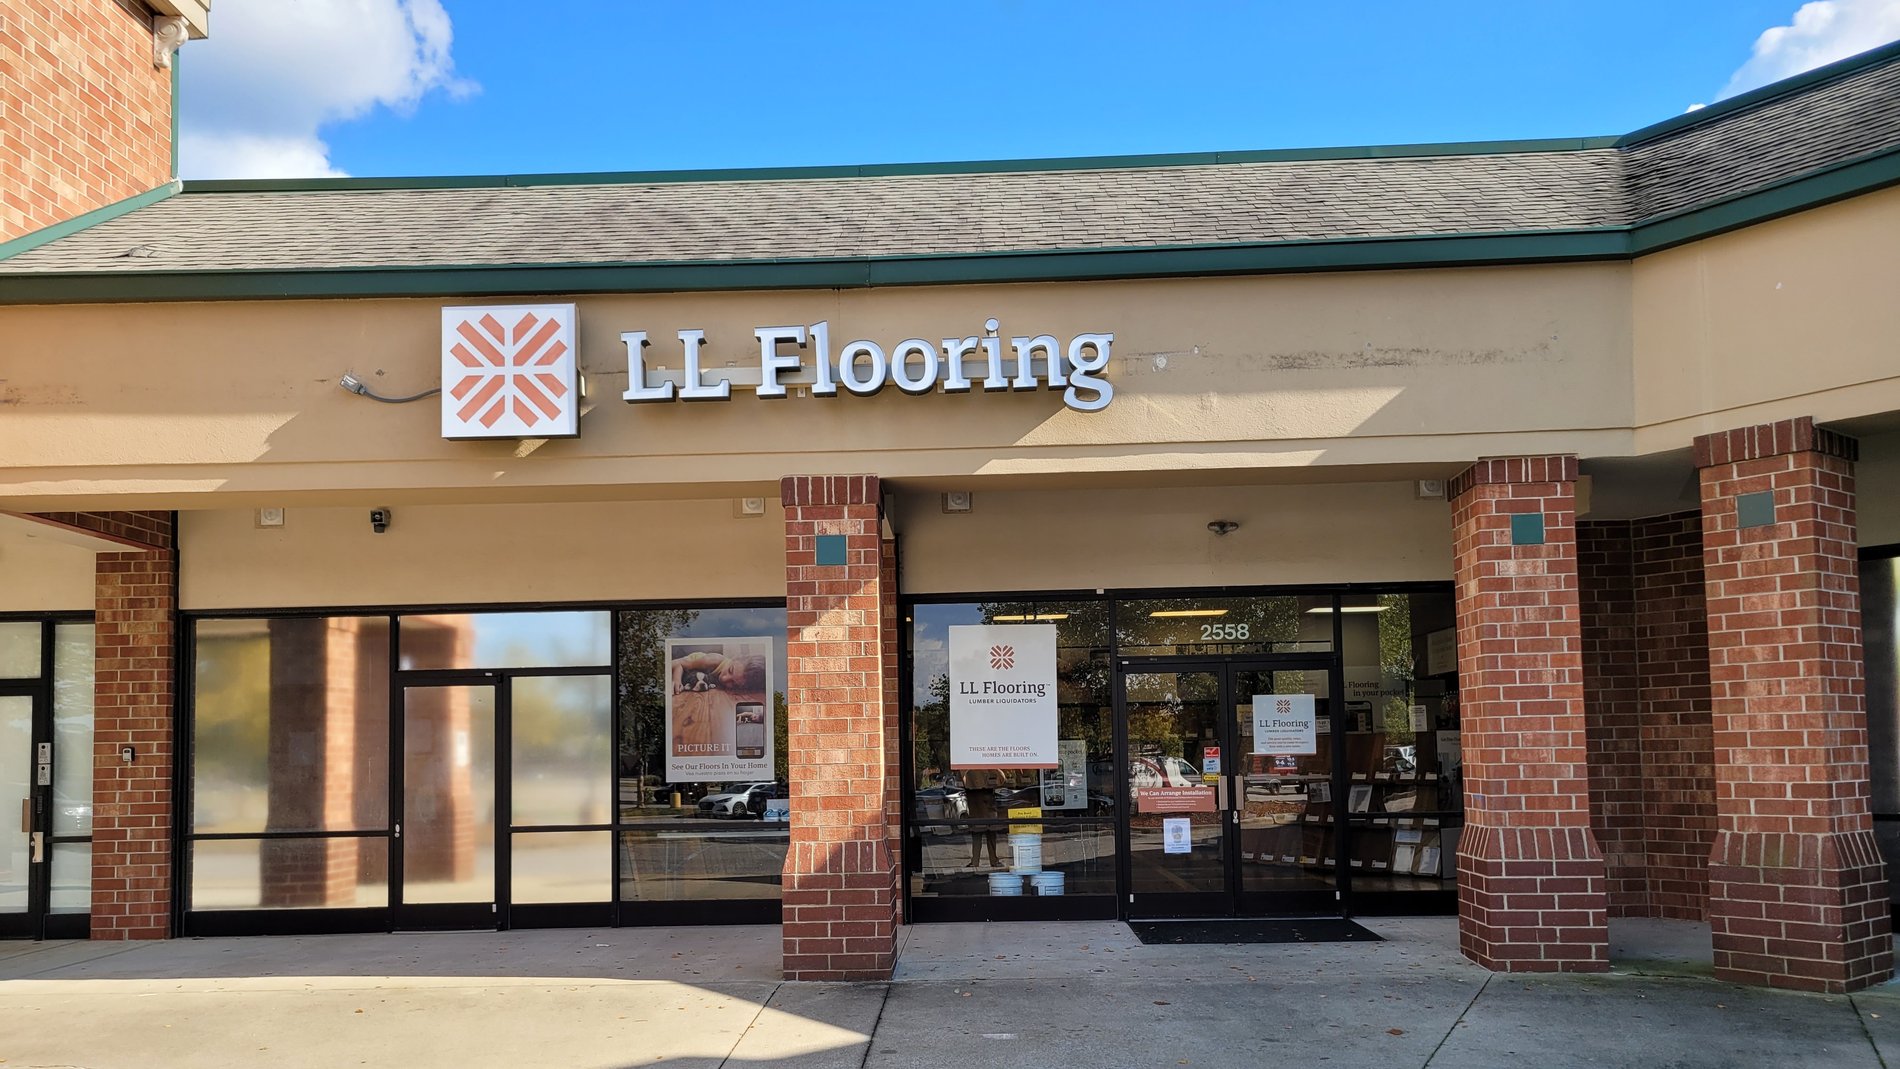 LL Flooring #1384 Garner | 2558 Timber Dr | Storefront